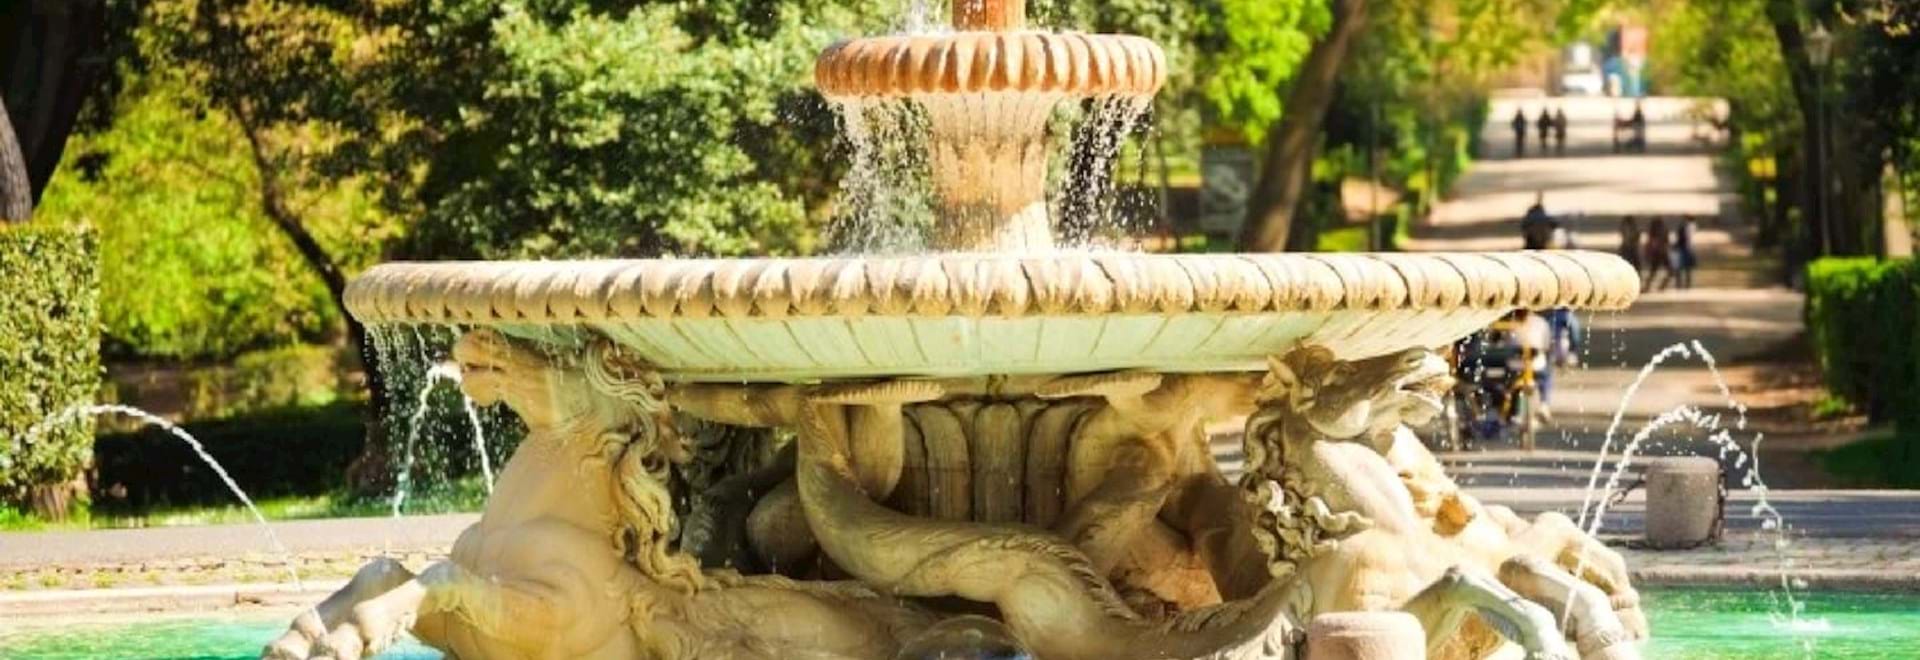 Fountain at the Villa Borghese Gardens